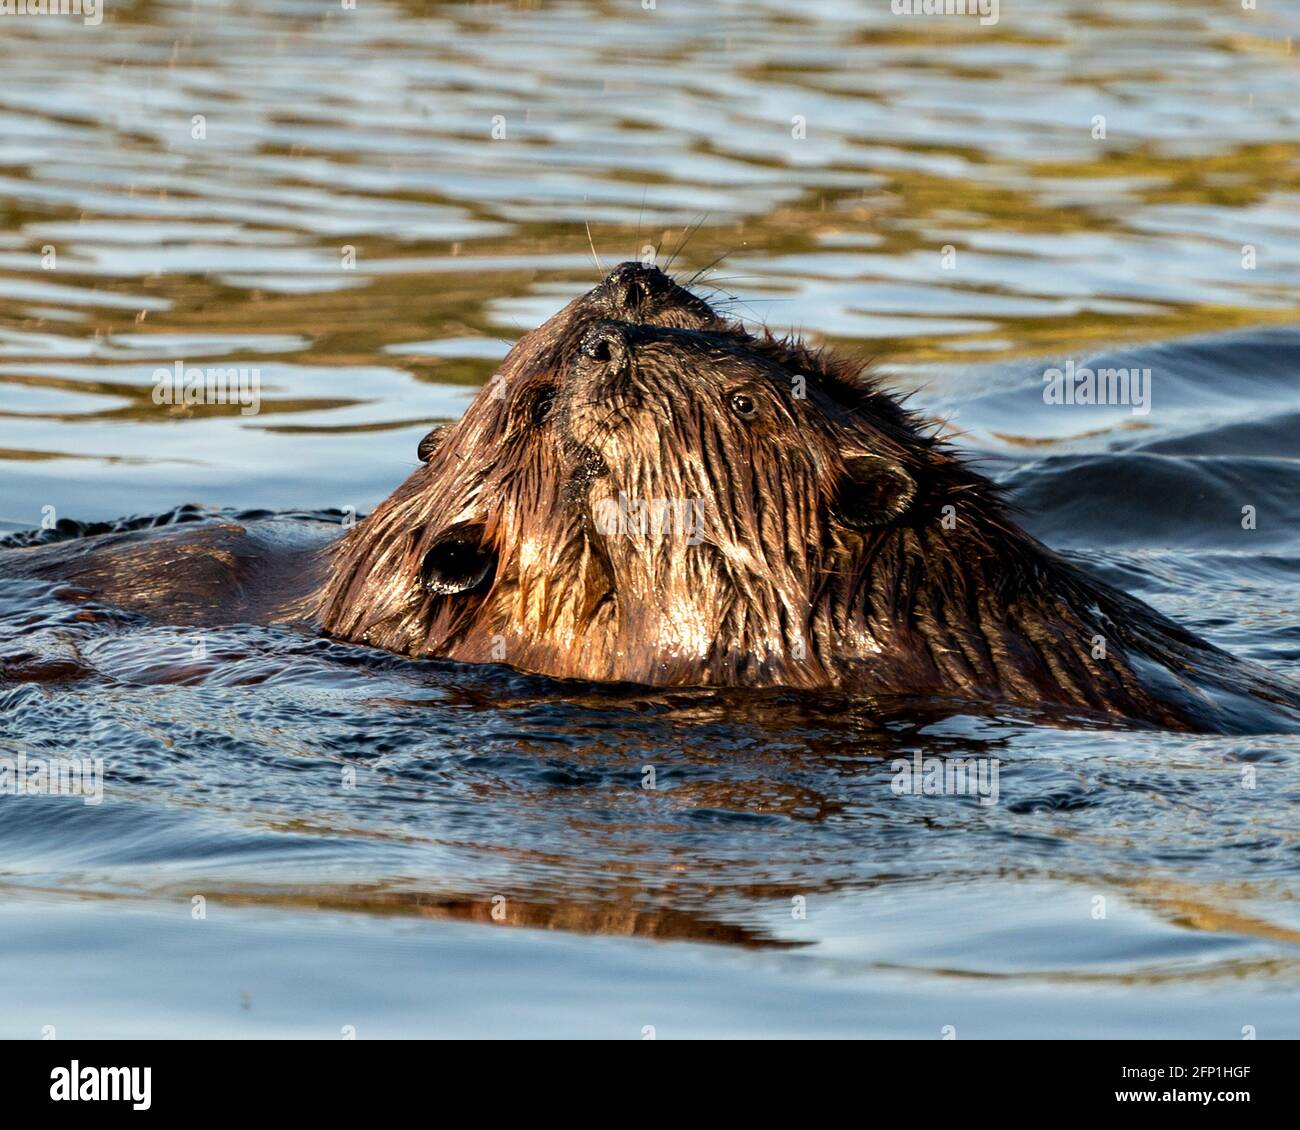 Beaver pareja en el agua que se arregla unos a otros y que muestra piel marrón, cabeza, orejas, nariz, ojos, susurros en su hábitat y entorno. Imagen. Imagen Foto de stock